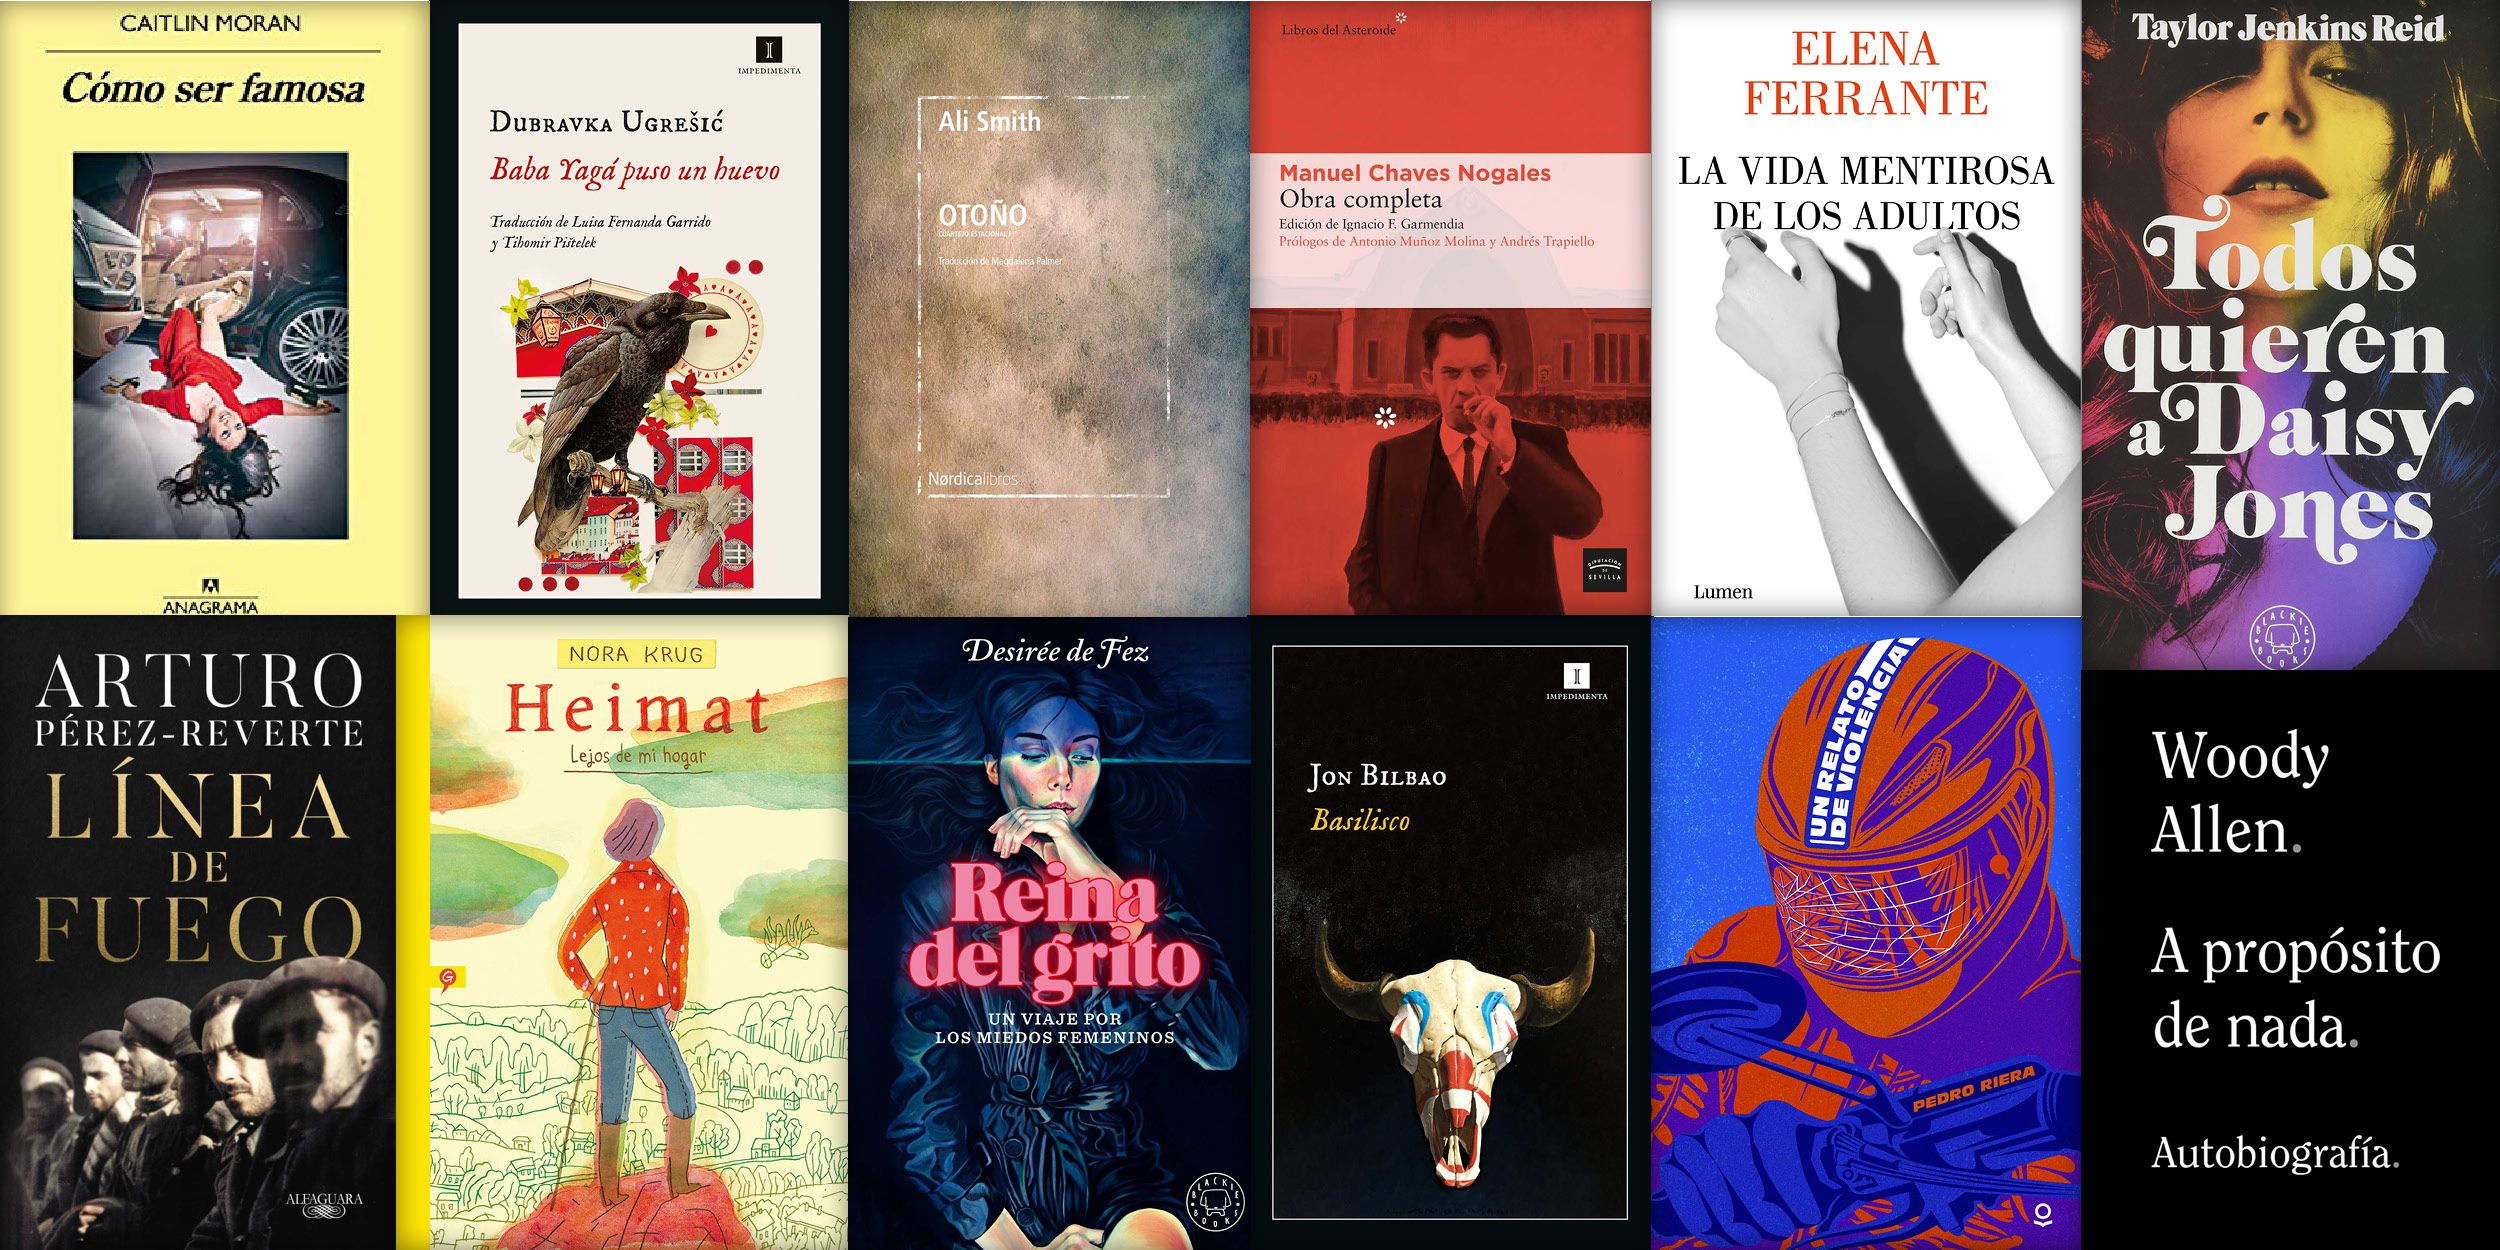 Estos son los libros recomendados esta semana por los críticos literarios